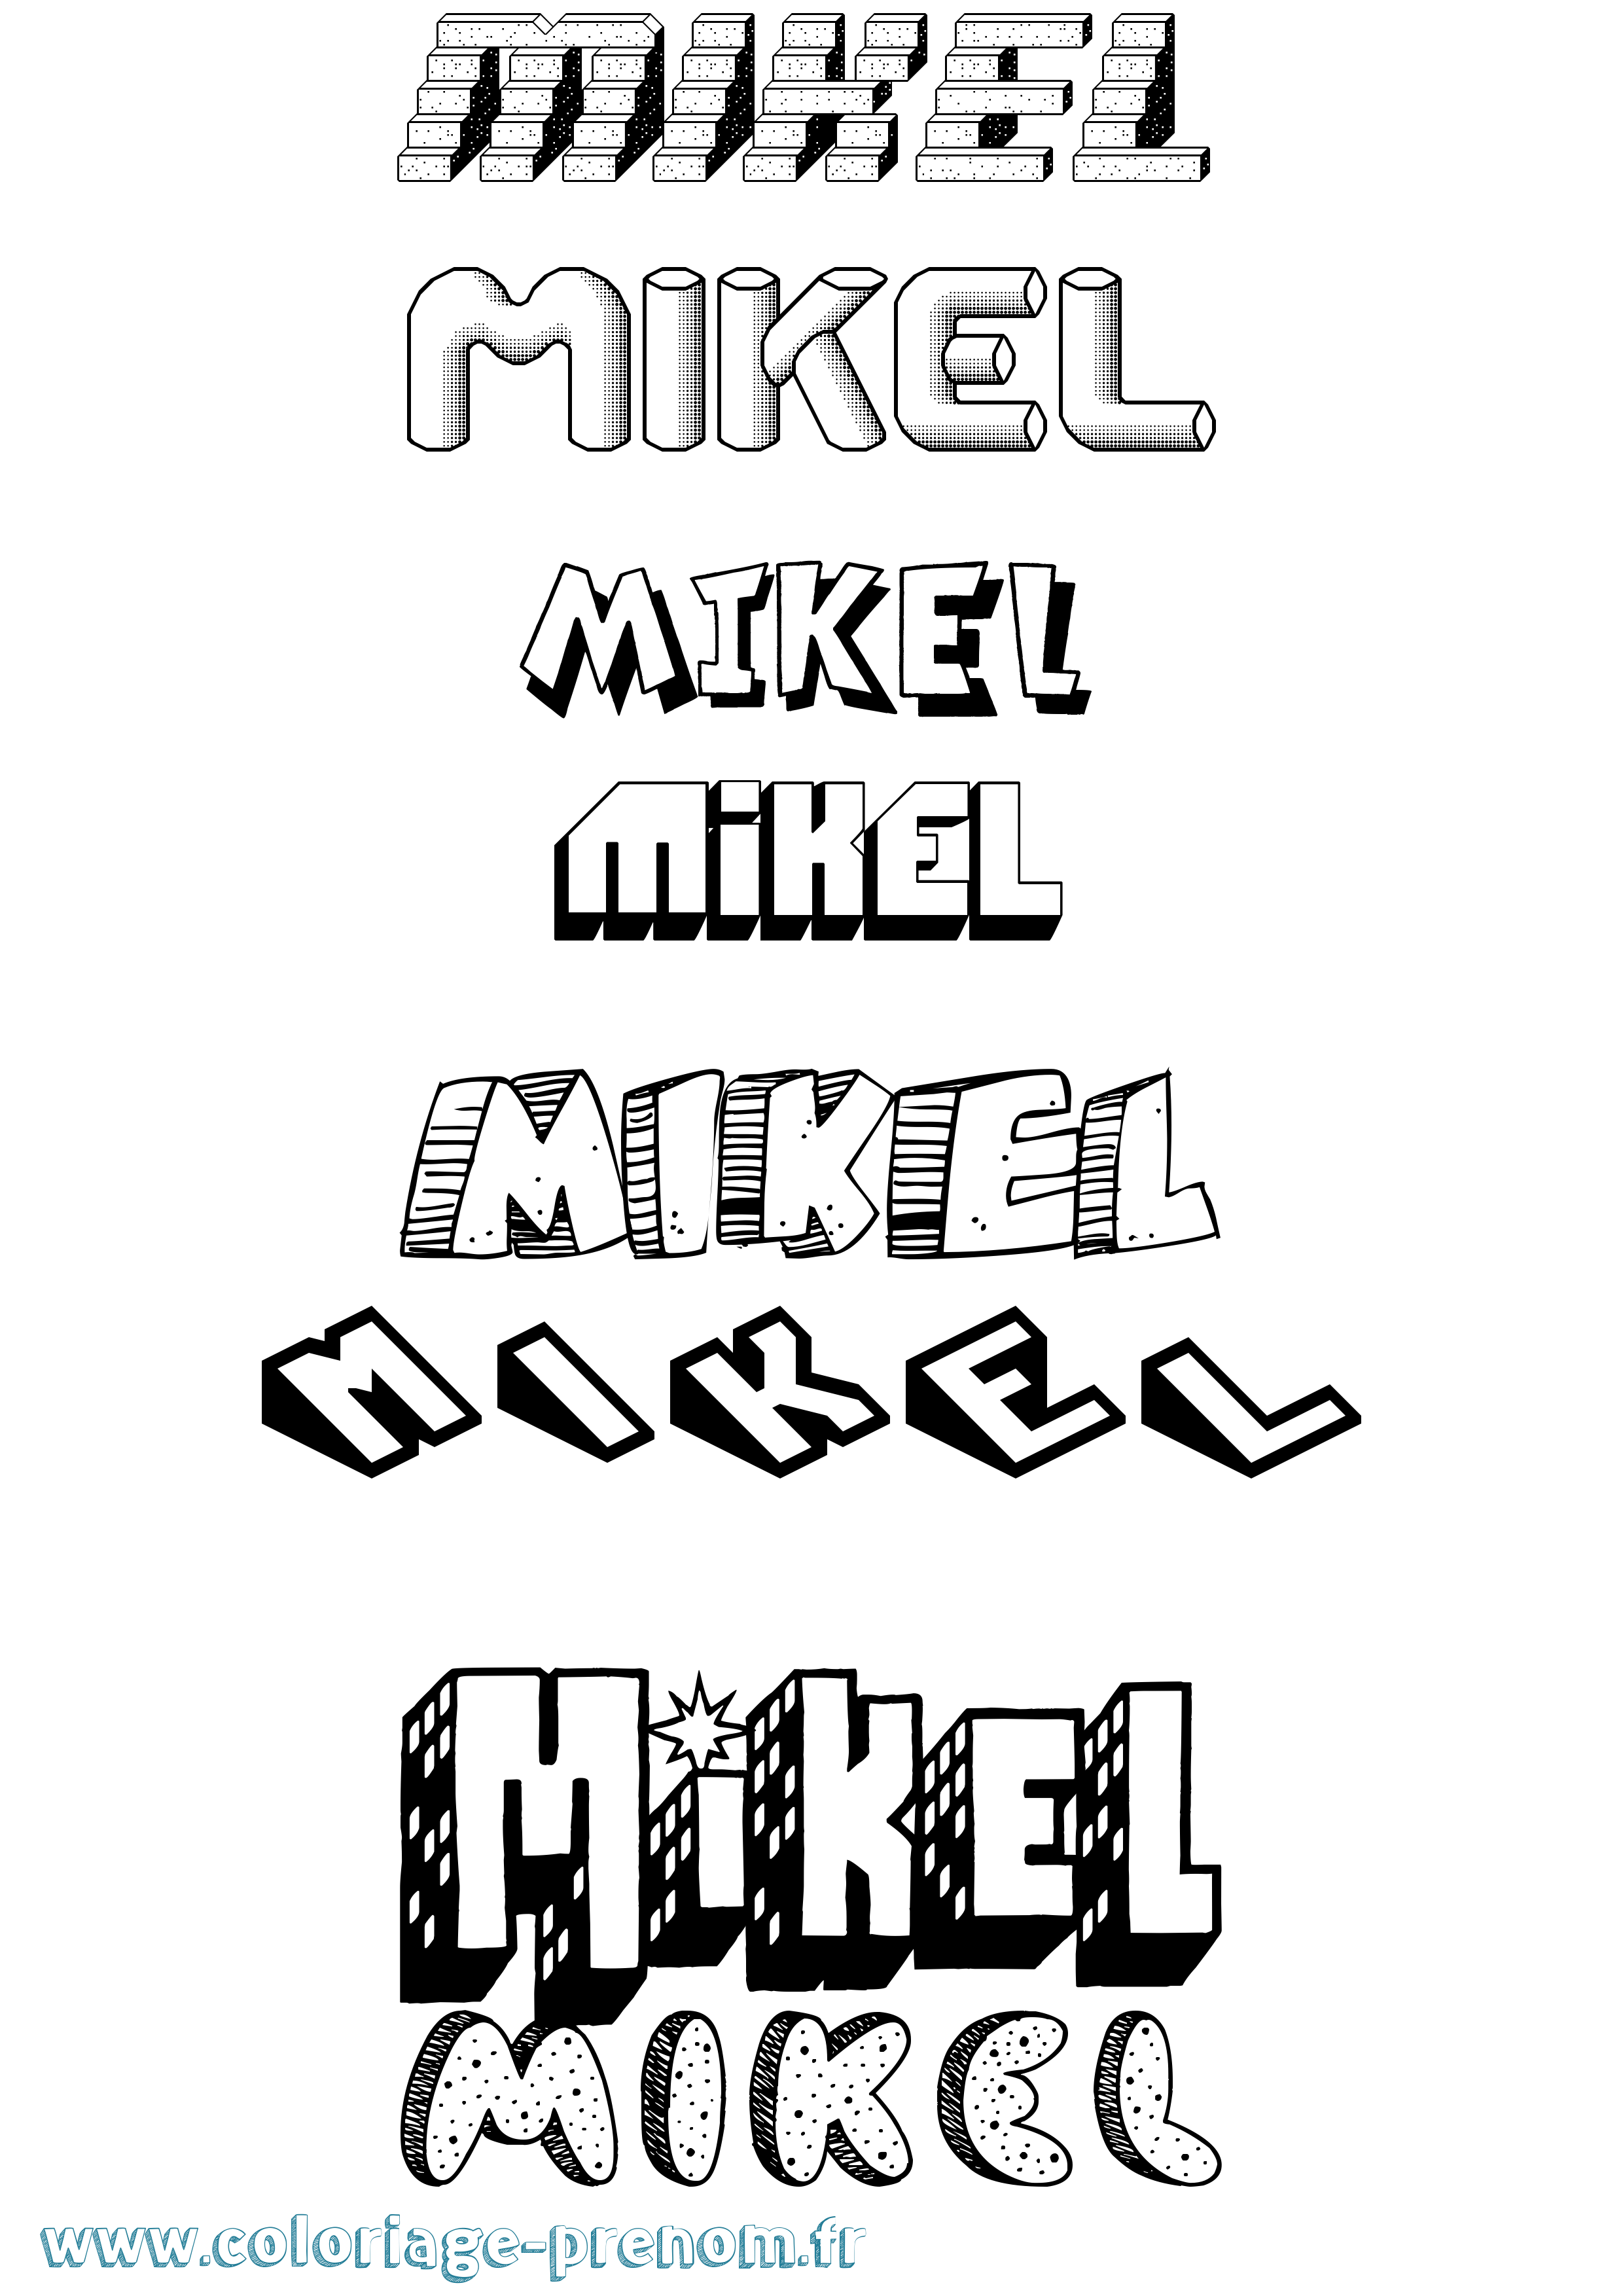 Coloriage prénom Mikel Effet 3D